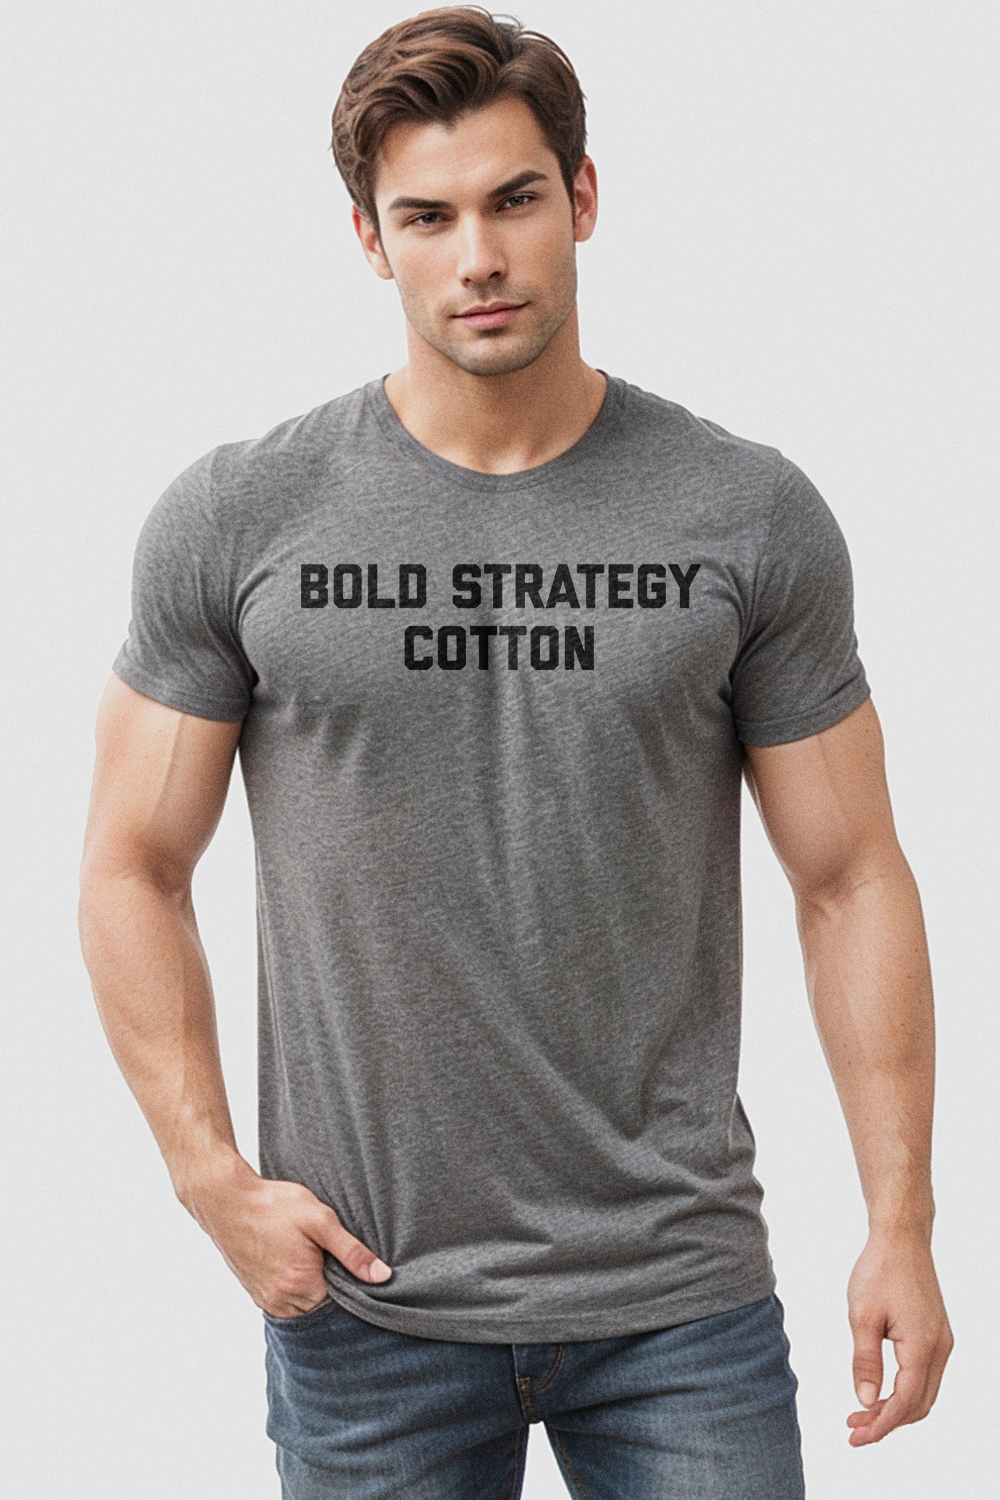 Bold Strategy Cotton Men's Tri-Blend T-Shirt